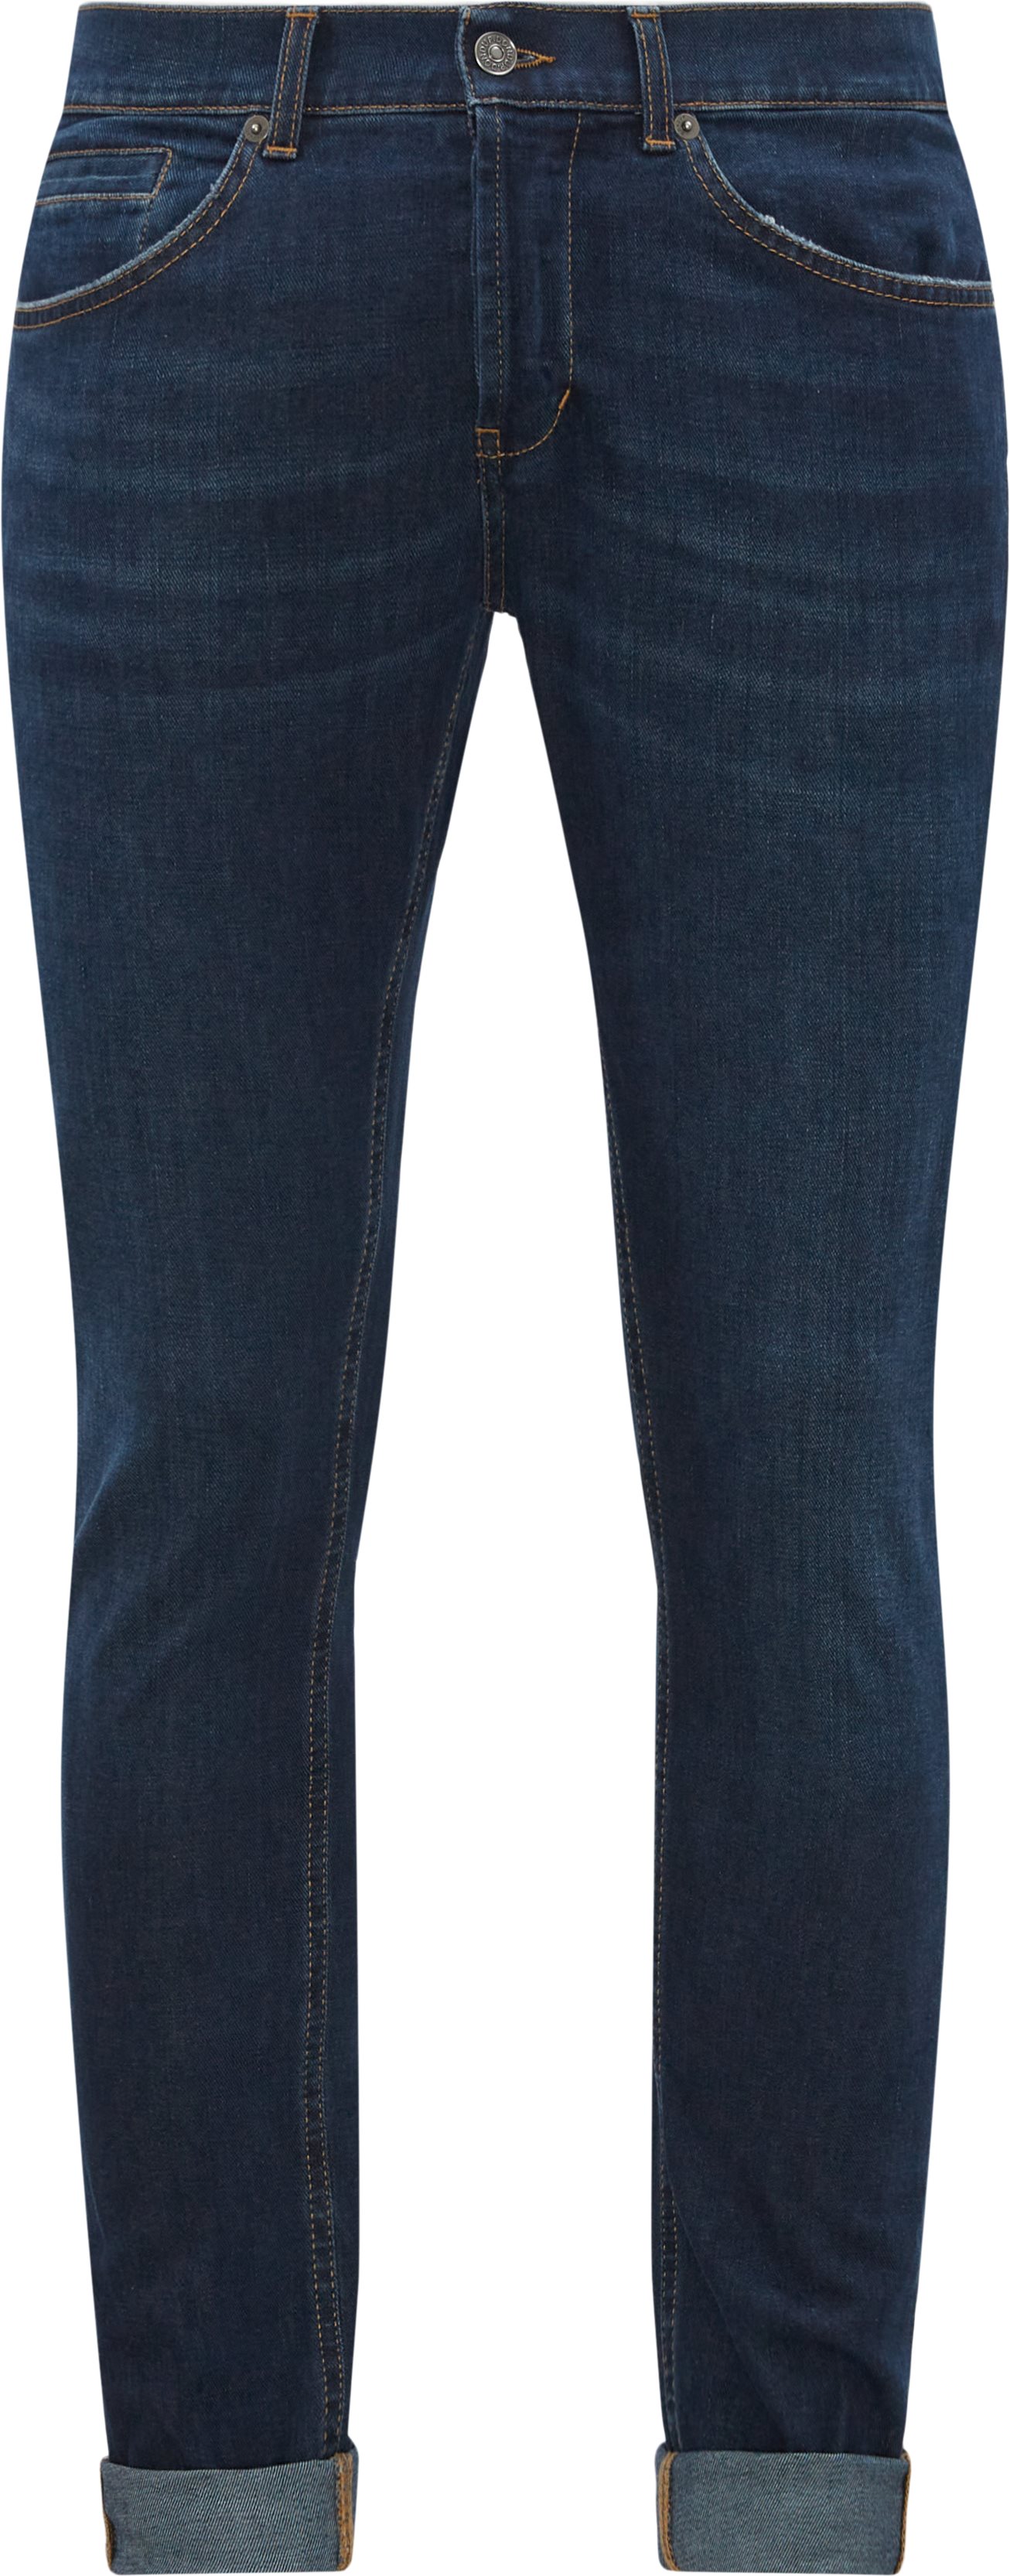 Jeans - Slim fit - Grey